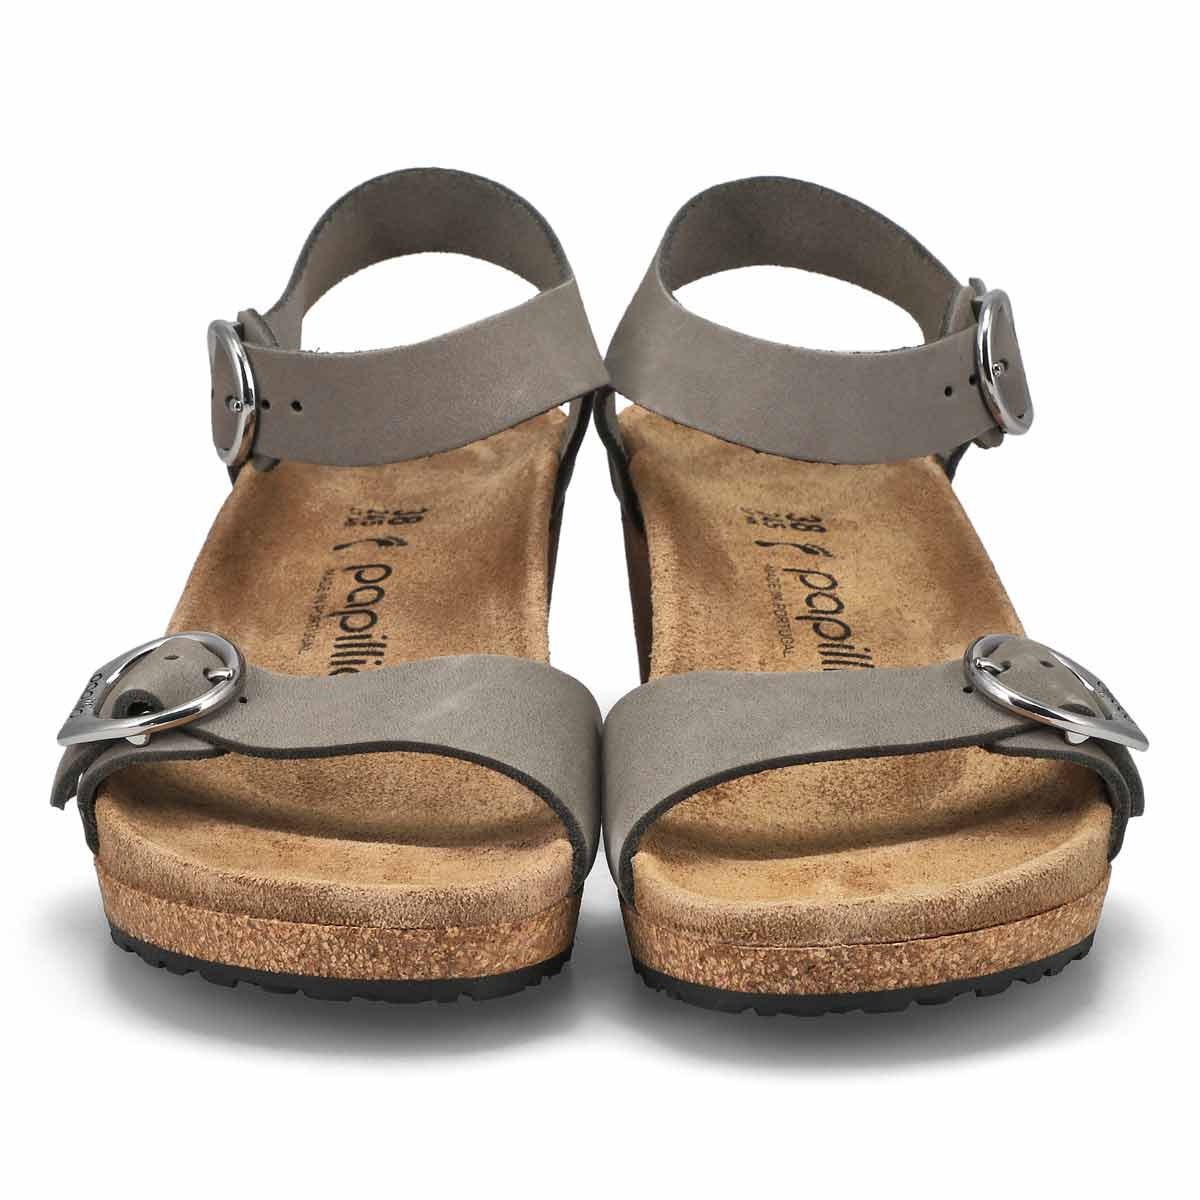 Sandale étroite compensée SOLEY, gris perle, femme